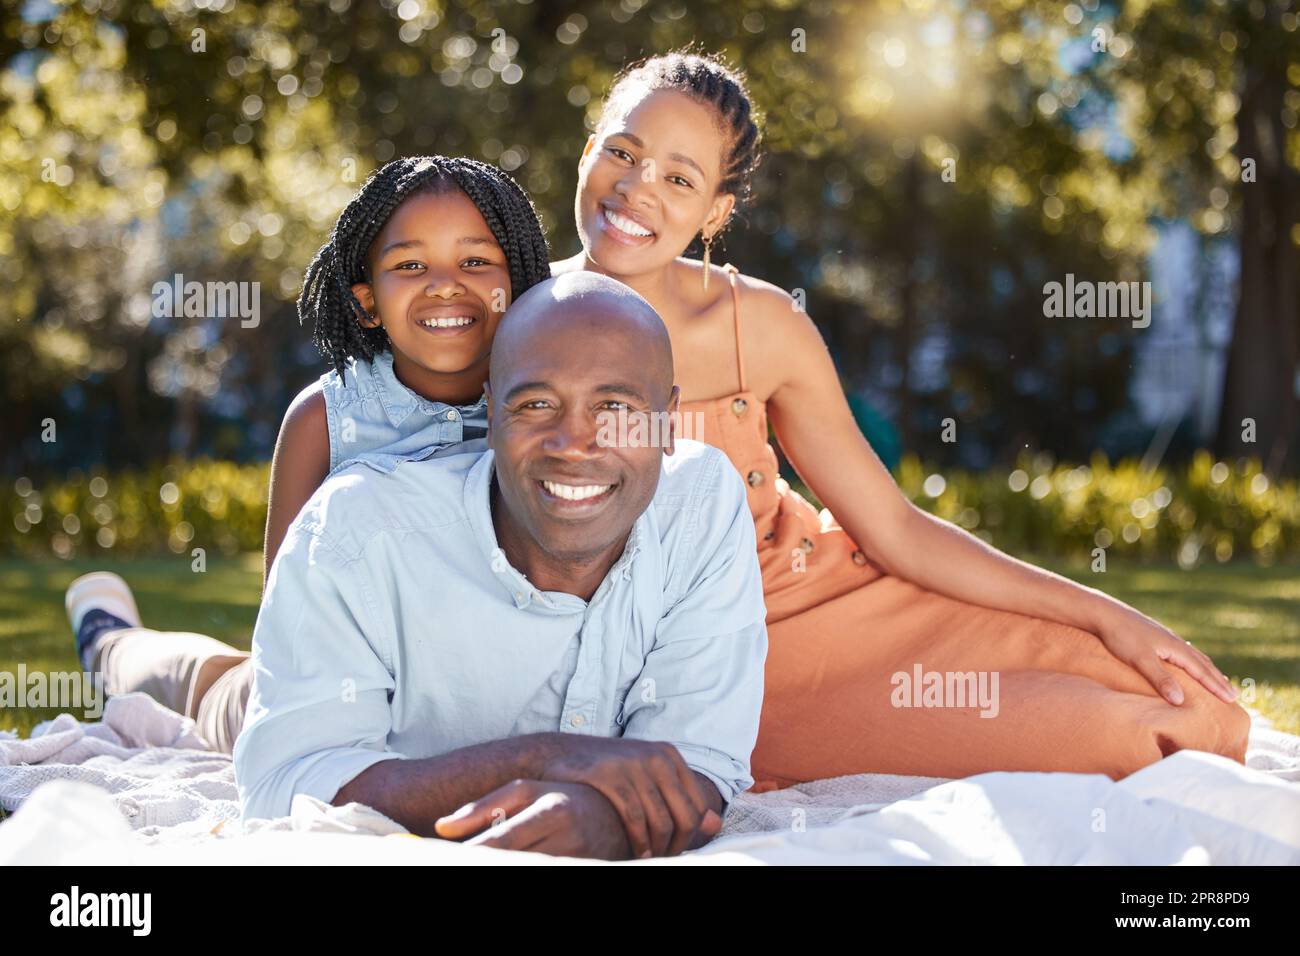 Portrait glückliche afroamerikanische Familie mit drei Personen, die im Sommer eine schöne Zeit zusammen im Park verbringen. Mutter, Vater und Tochter, die sich draußen anfreunden. Ein süßes Mädchen und Eltern, die draußen lächeln Stockfoto